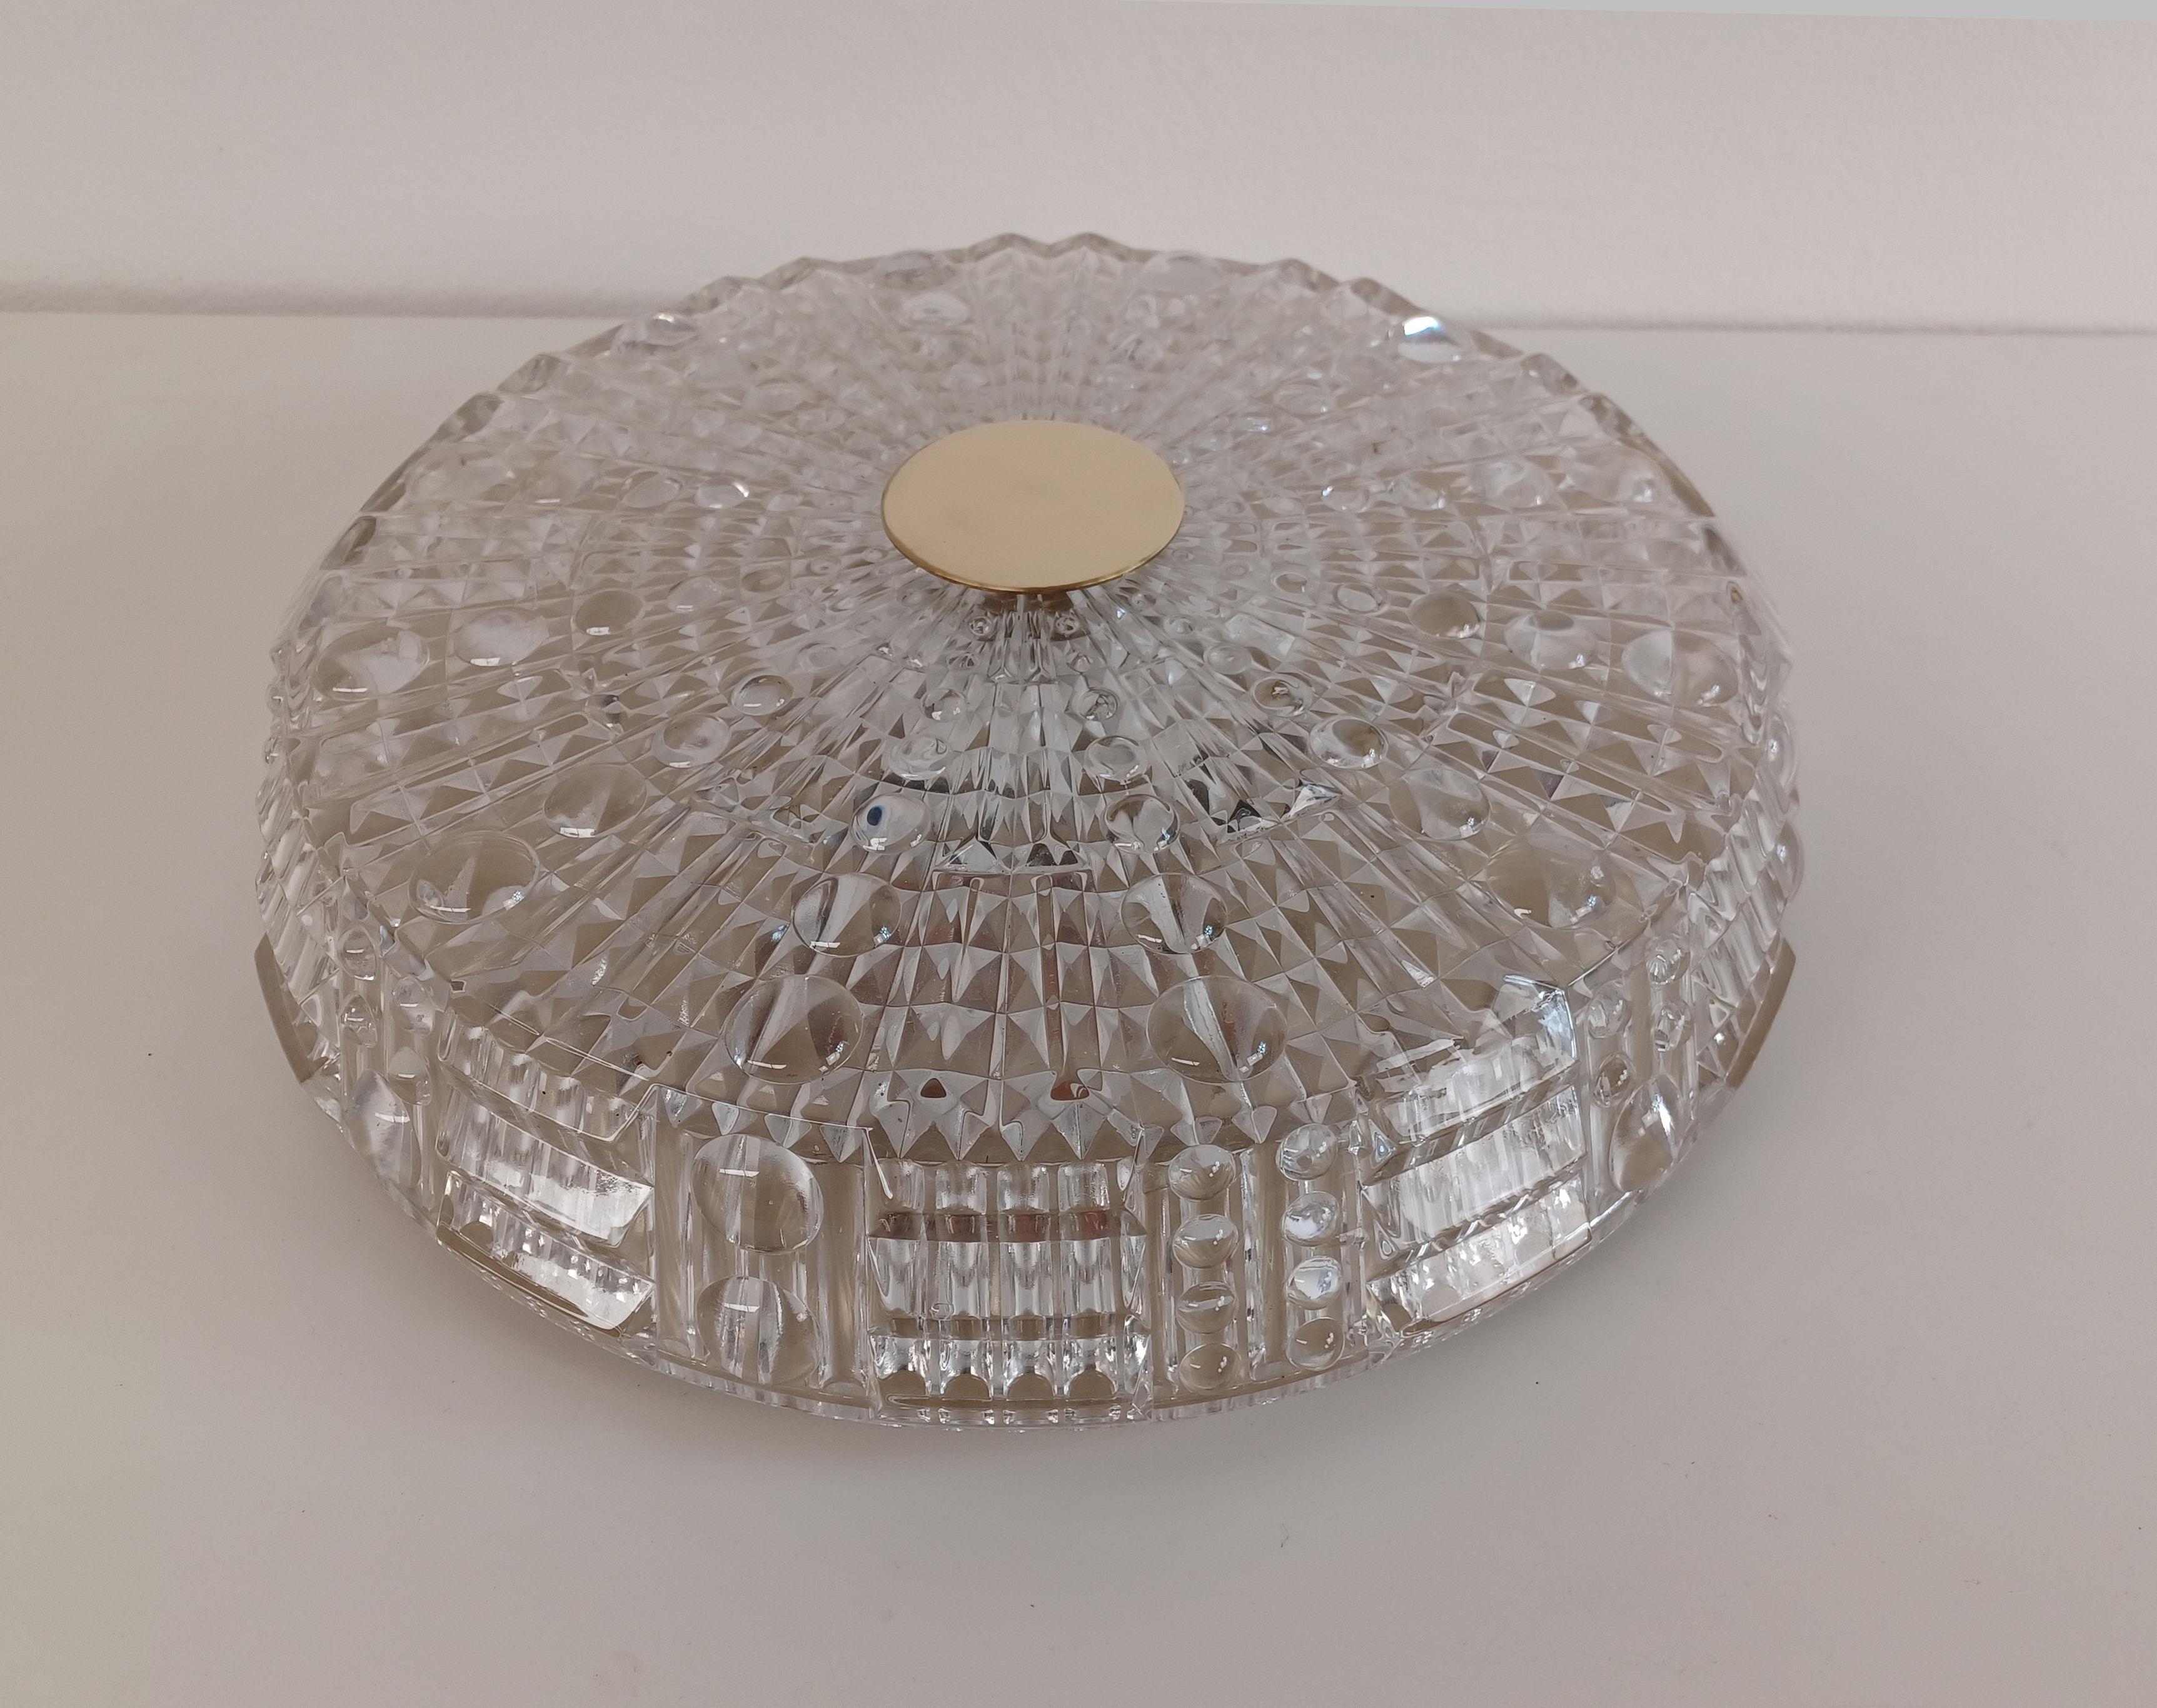 Kronleuchter aus der Mitte des Jahrhunderts aus Glas und Messing von Carl Fagerlund für Lyfa.

Der Flushmount-Kronleuchter verfügt über eine komplett neu verdrahtete 6-Licht-Halterung  mit einem großen Lampenschirm aus dickem Glas mit strukturierter